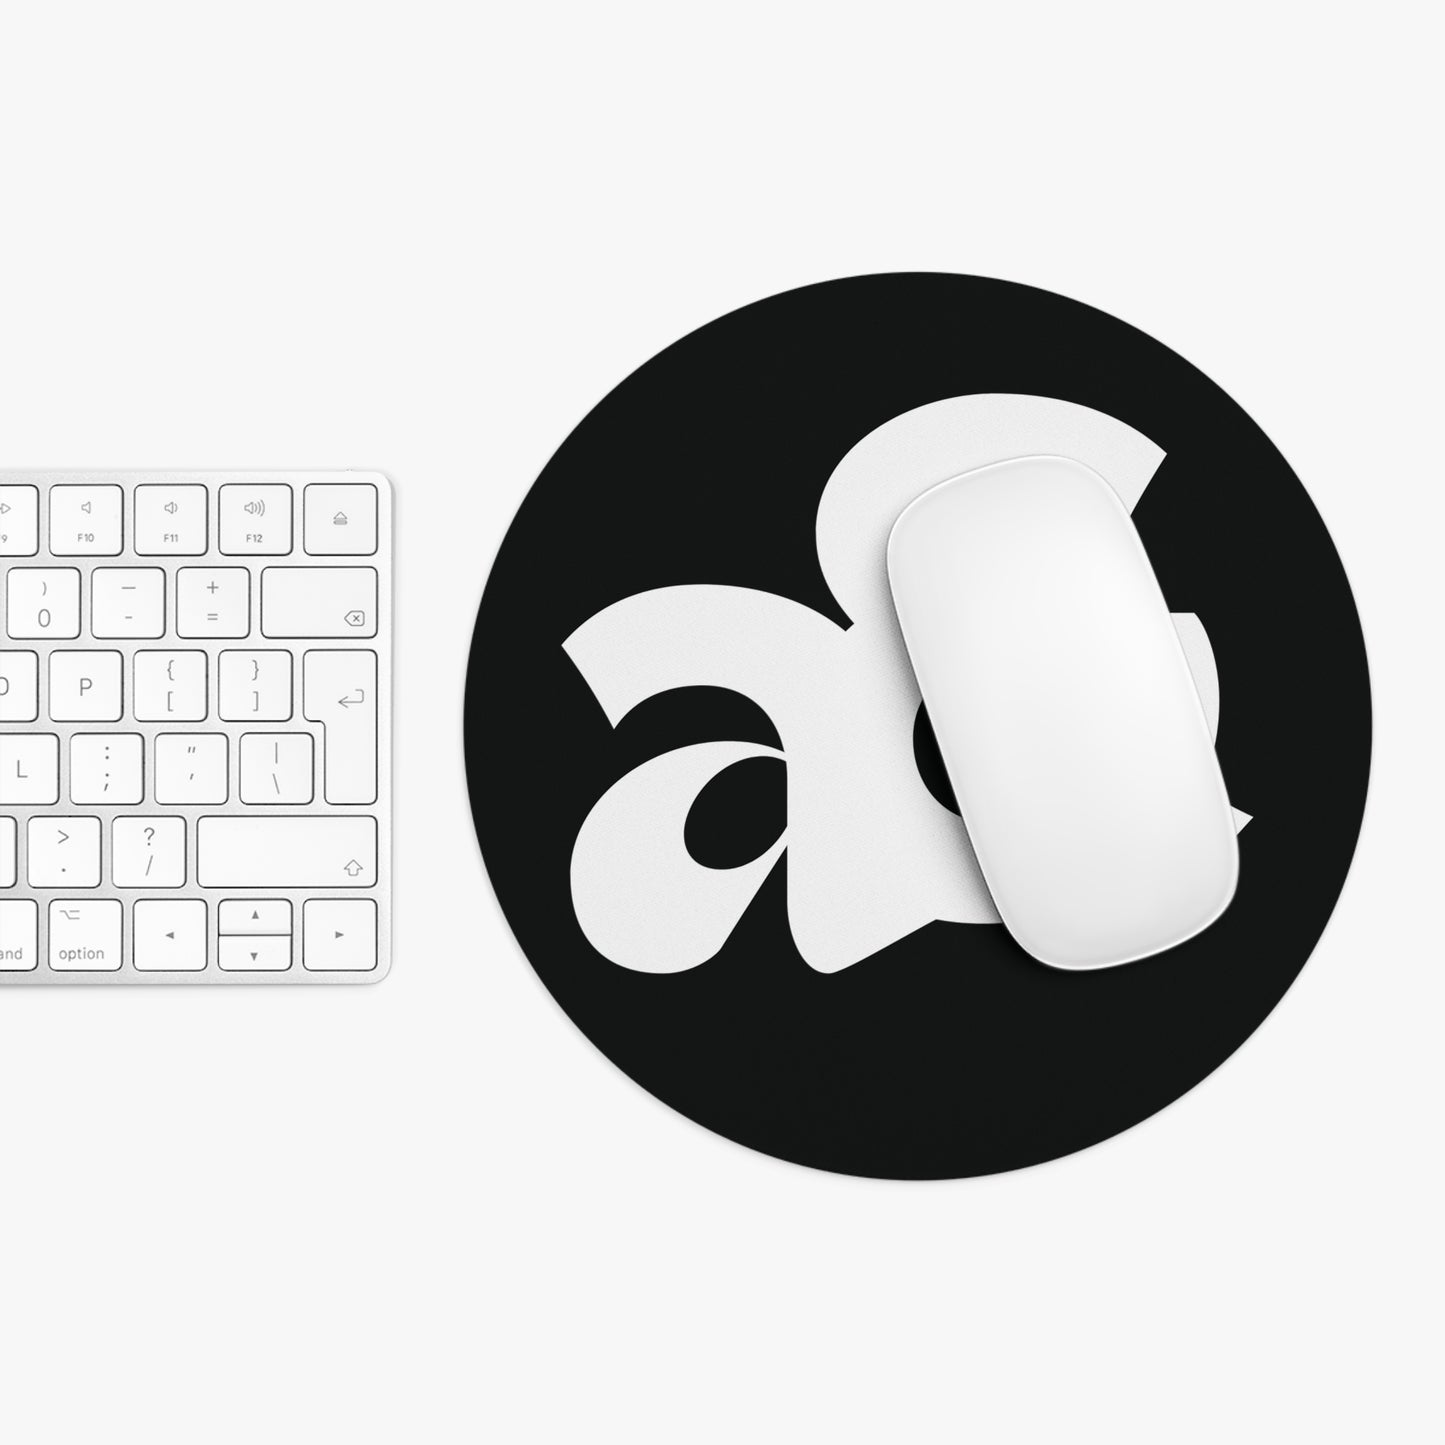 Artemis & Athena Minimalist Logo Mousepad in Black & White